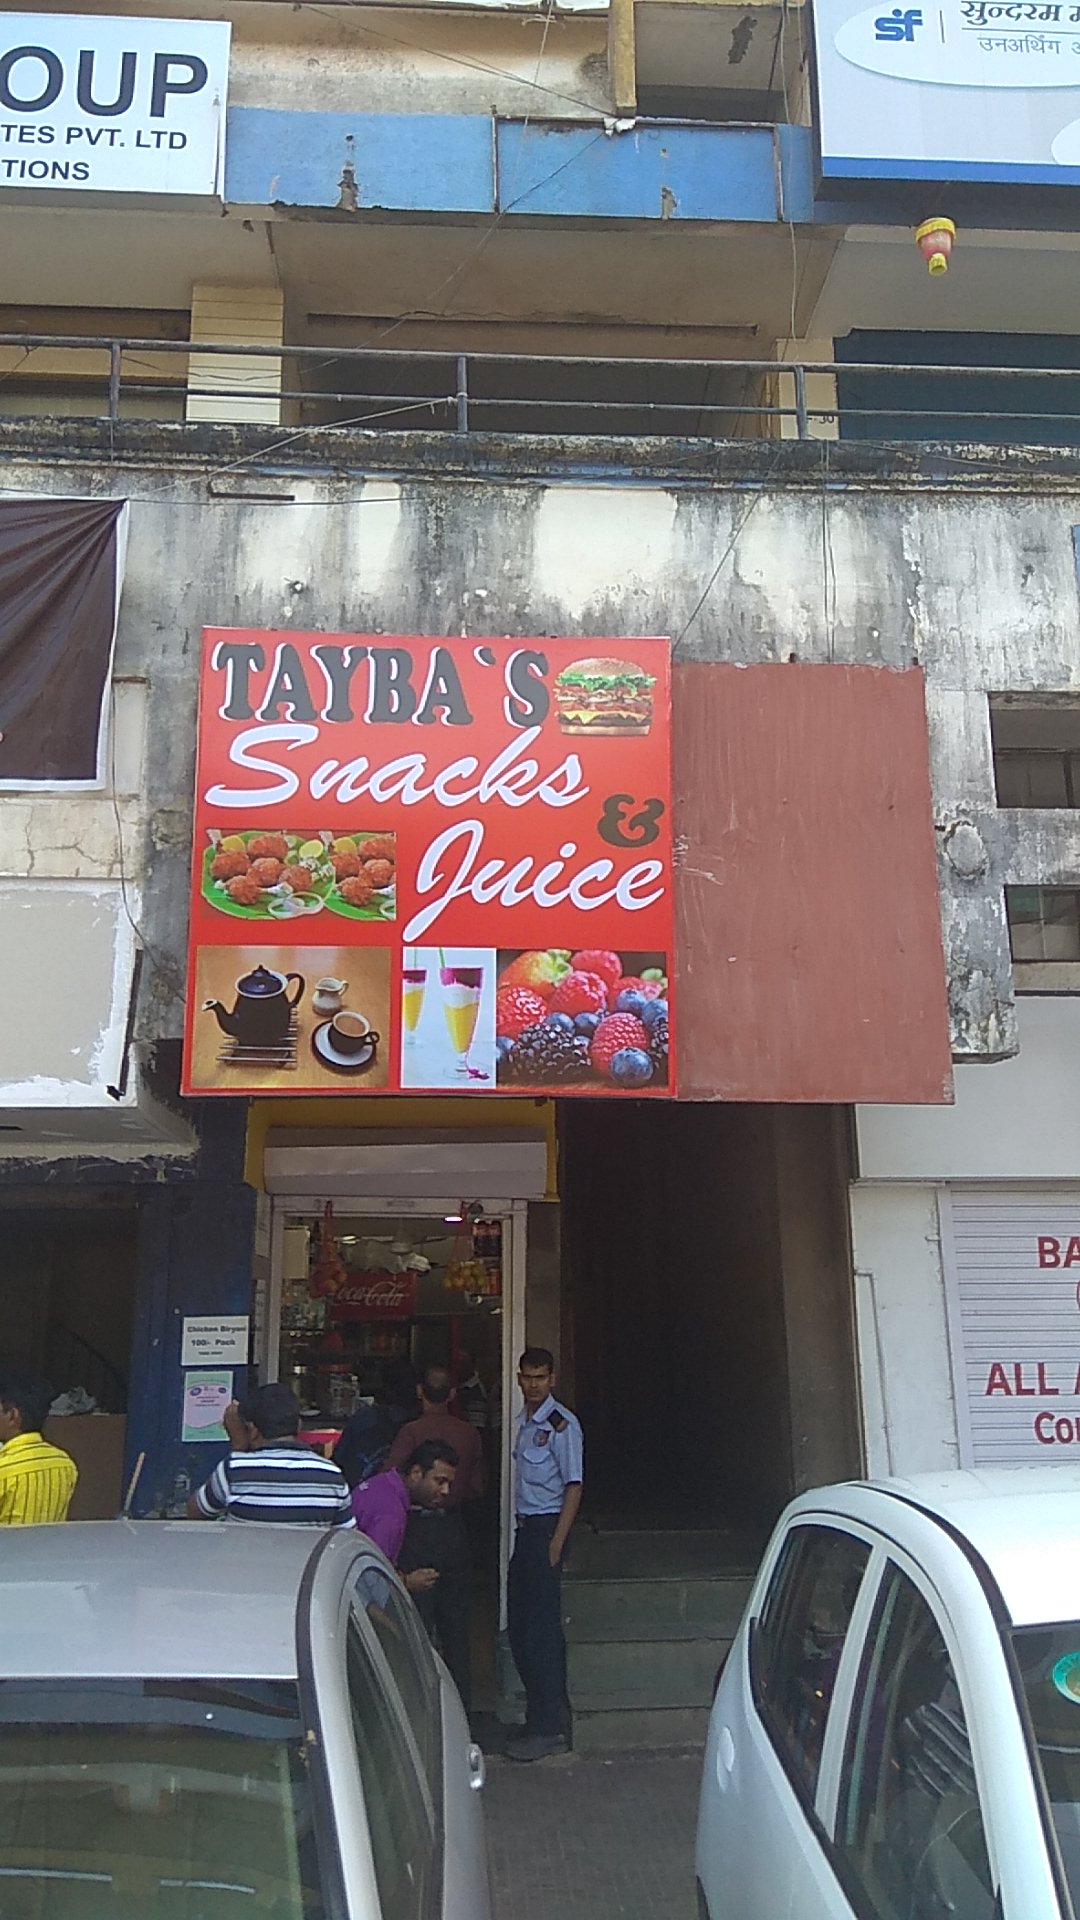 Taybas Snacks And Juice